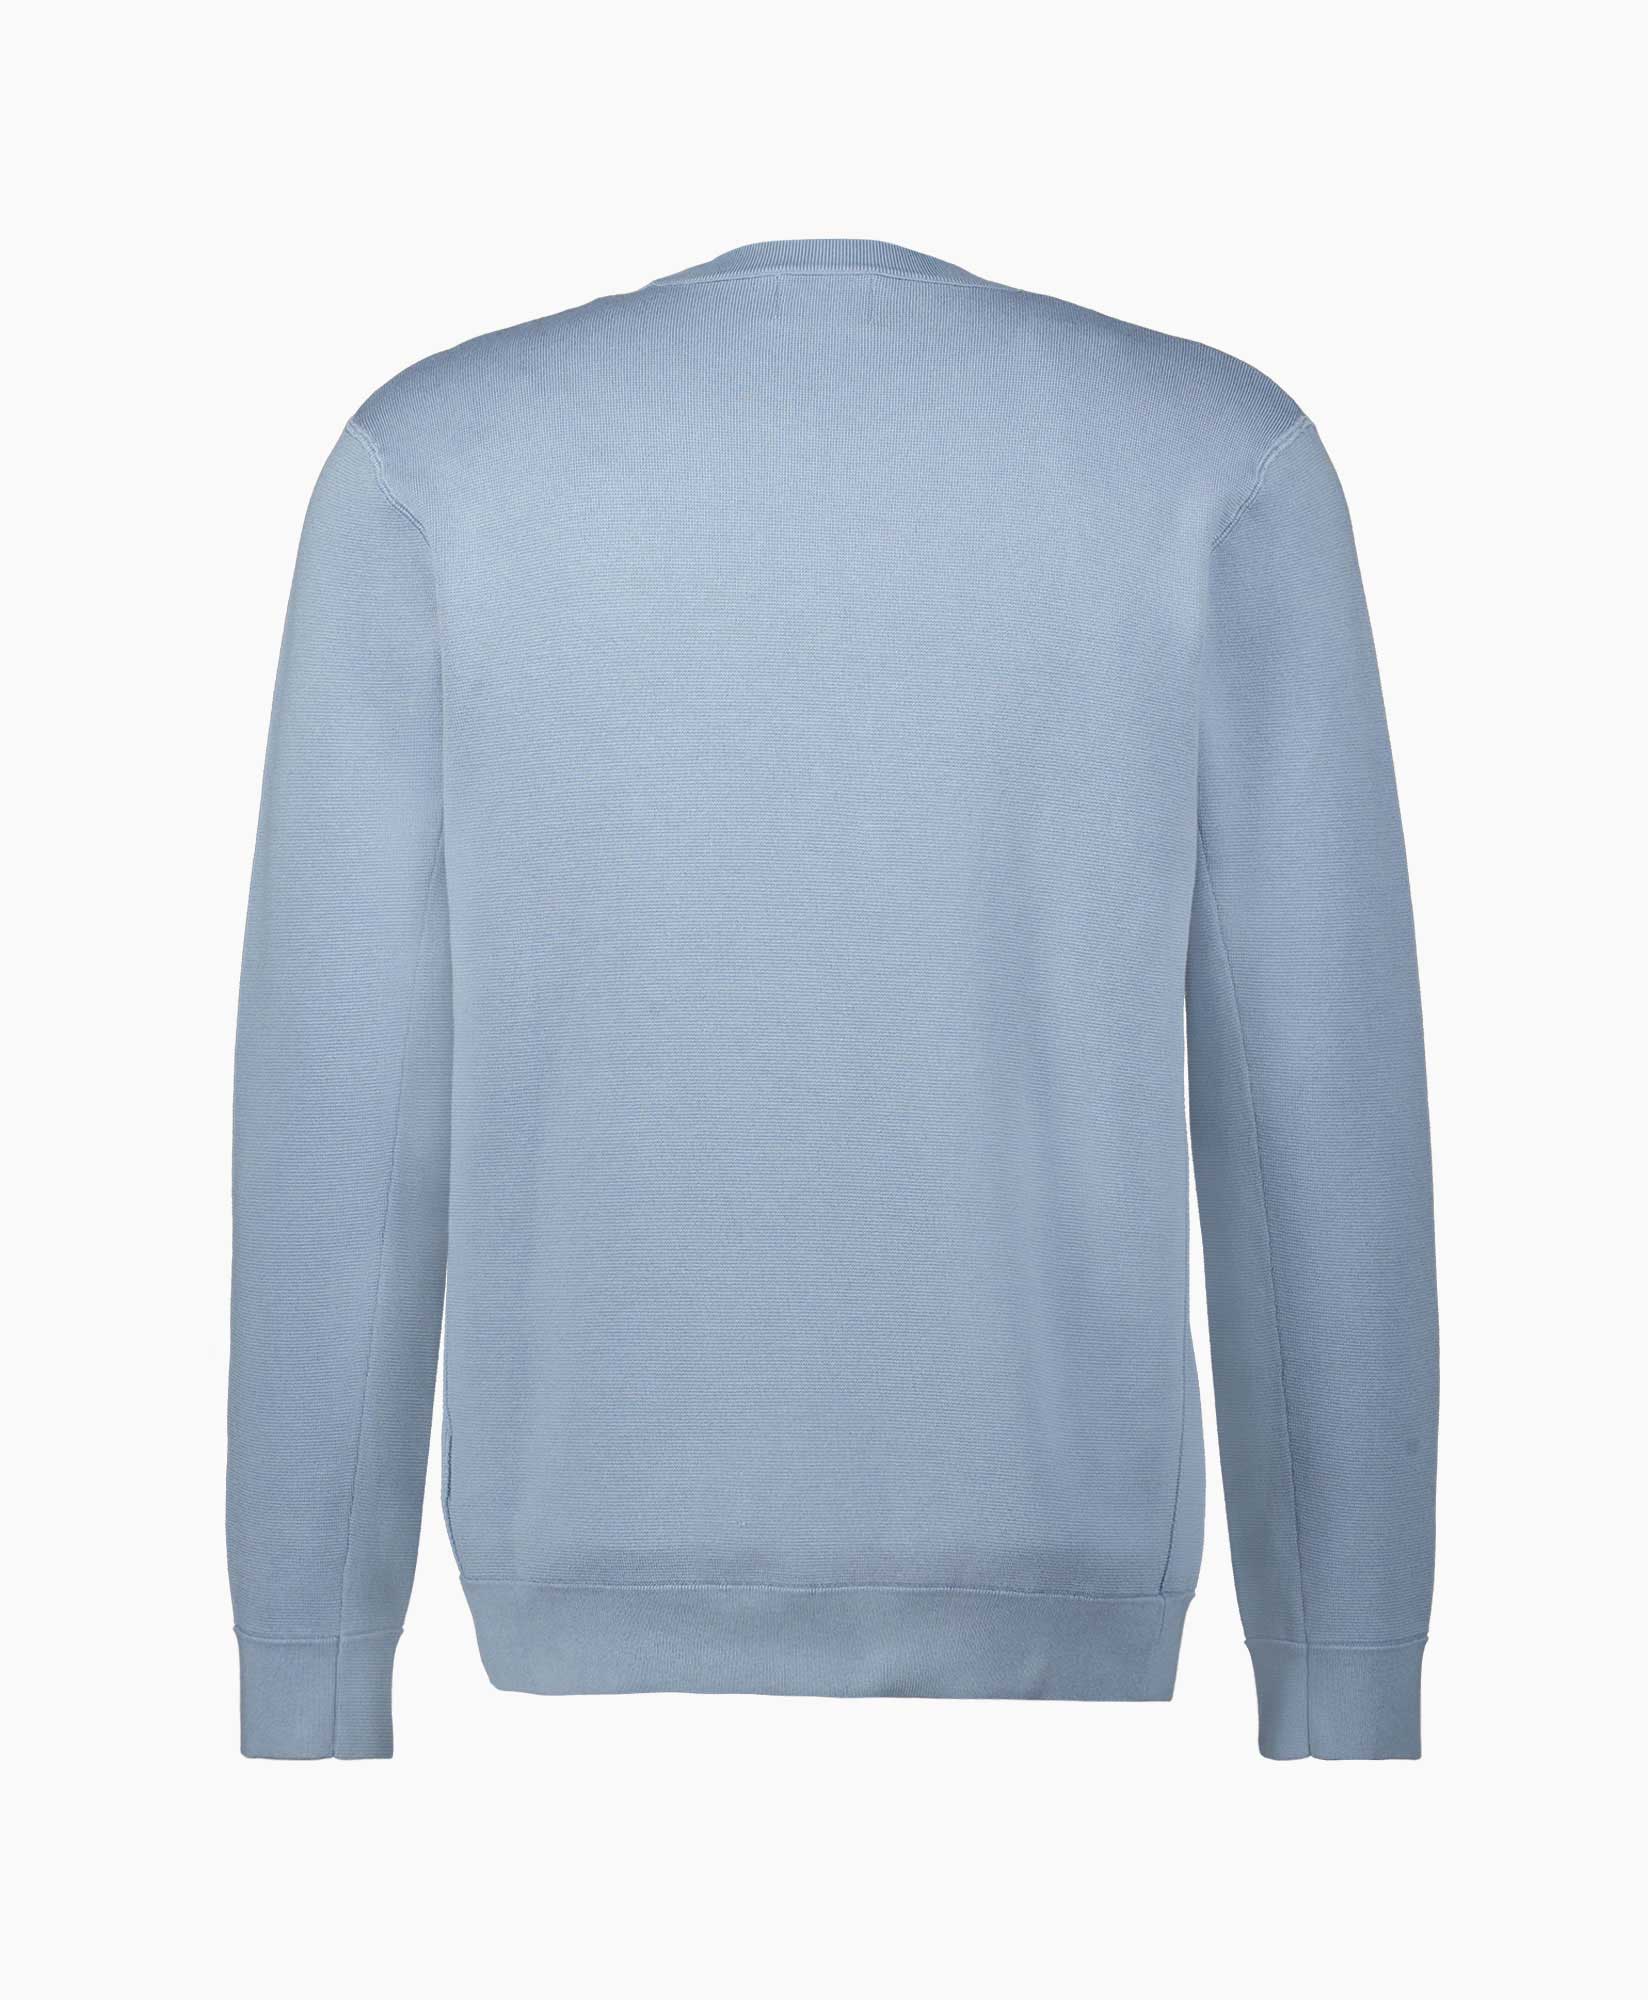 Nn07 Sweater Luis 6430 Blauw